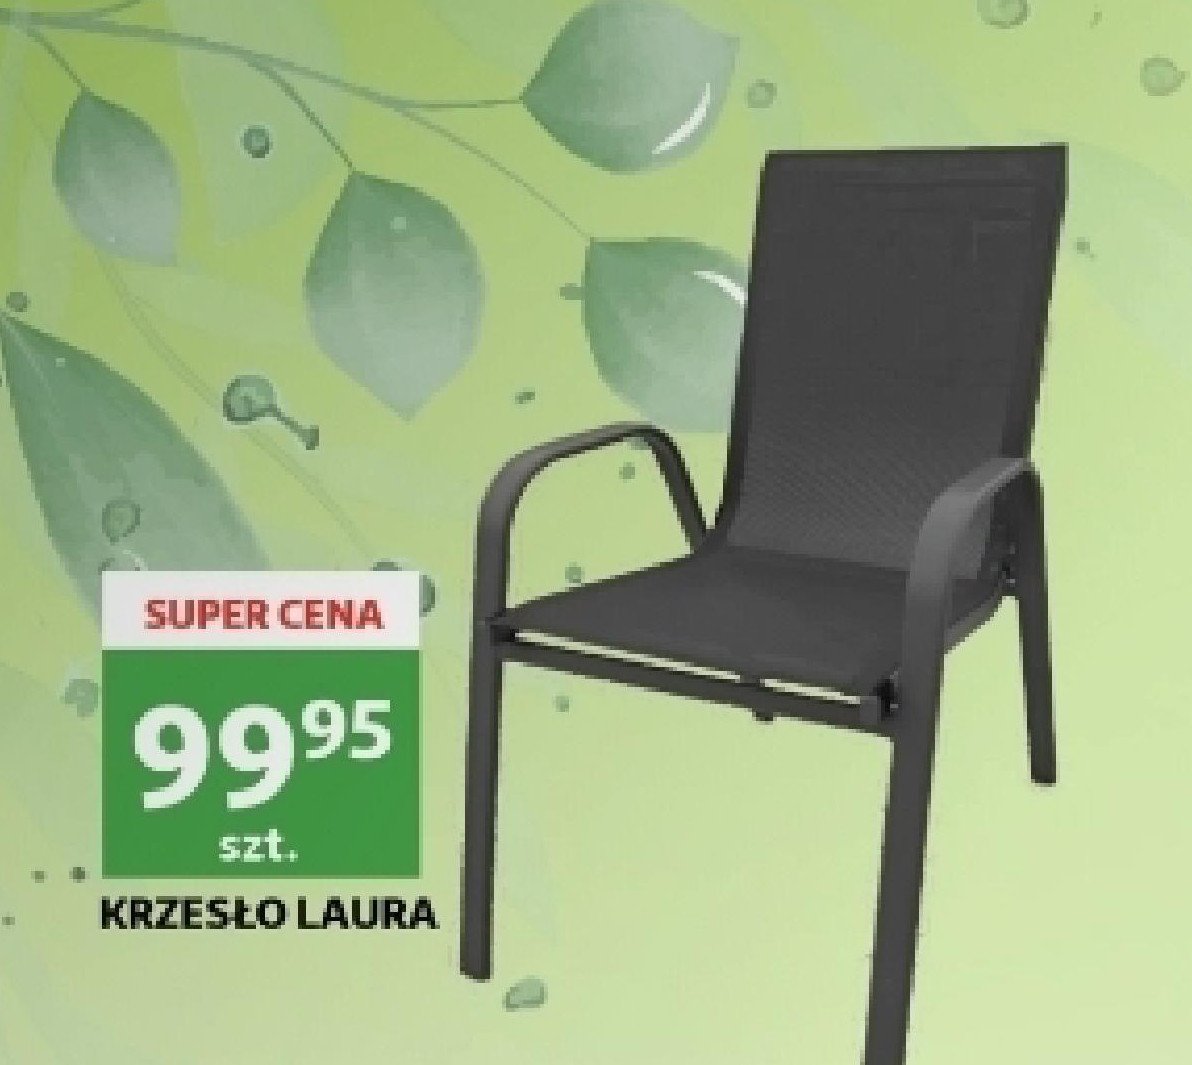 Krzesło laura promocja